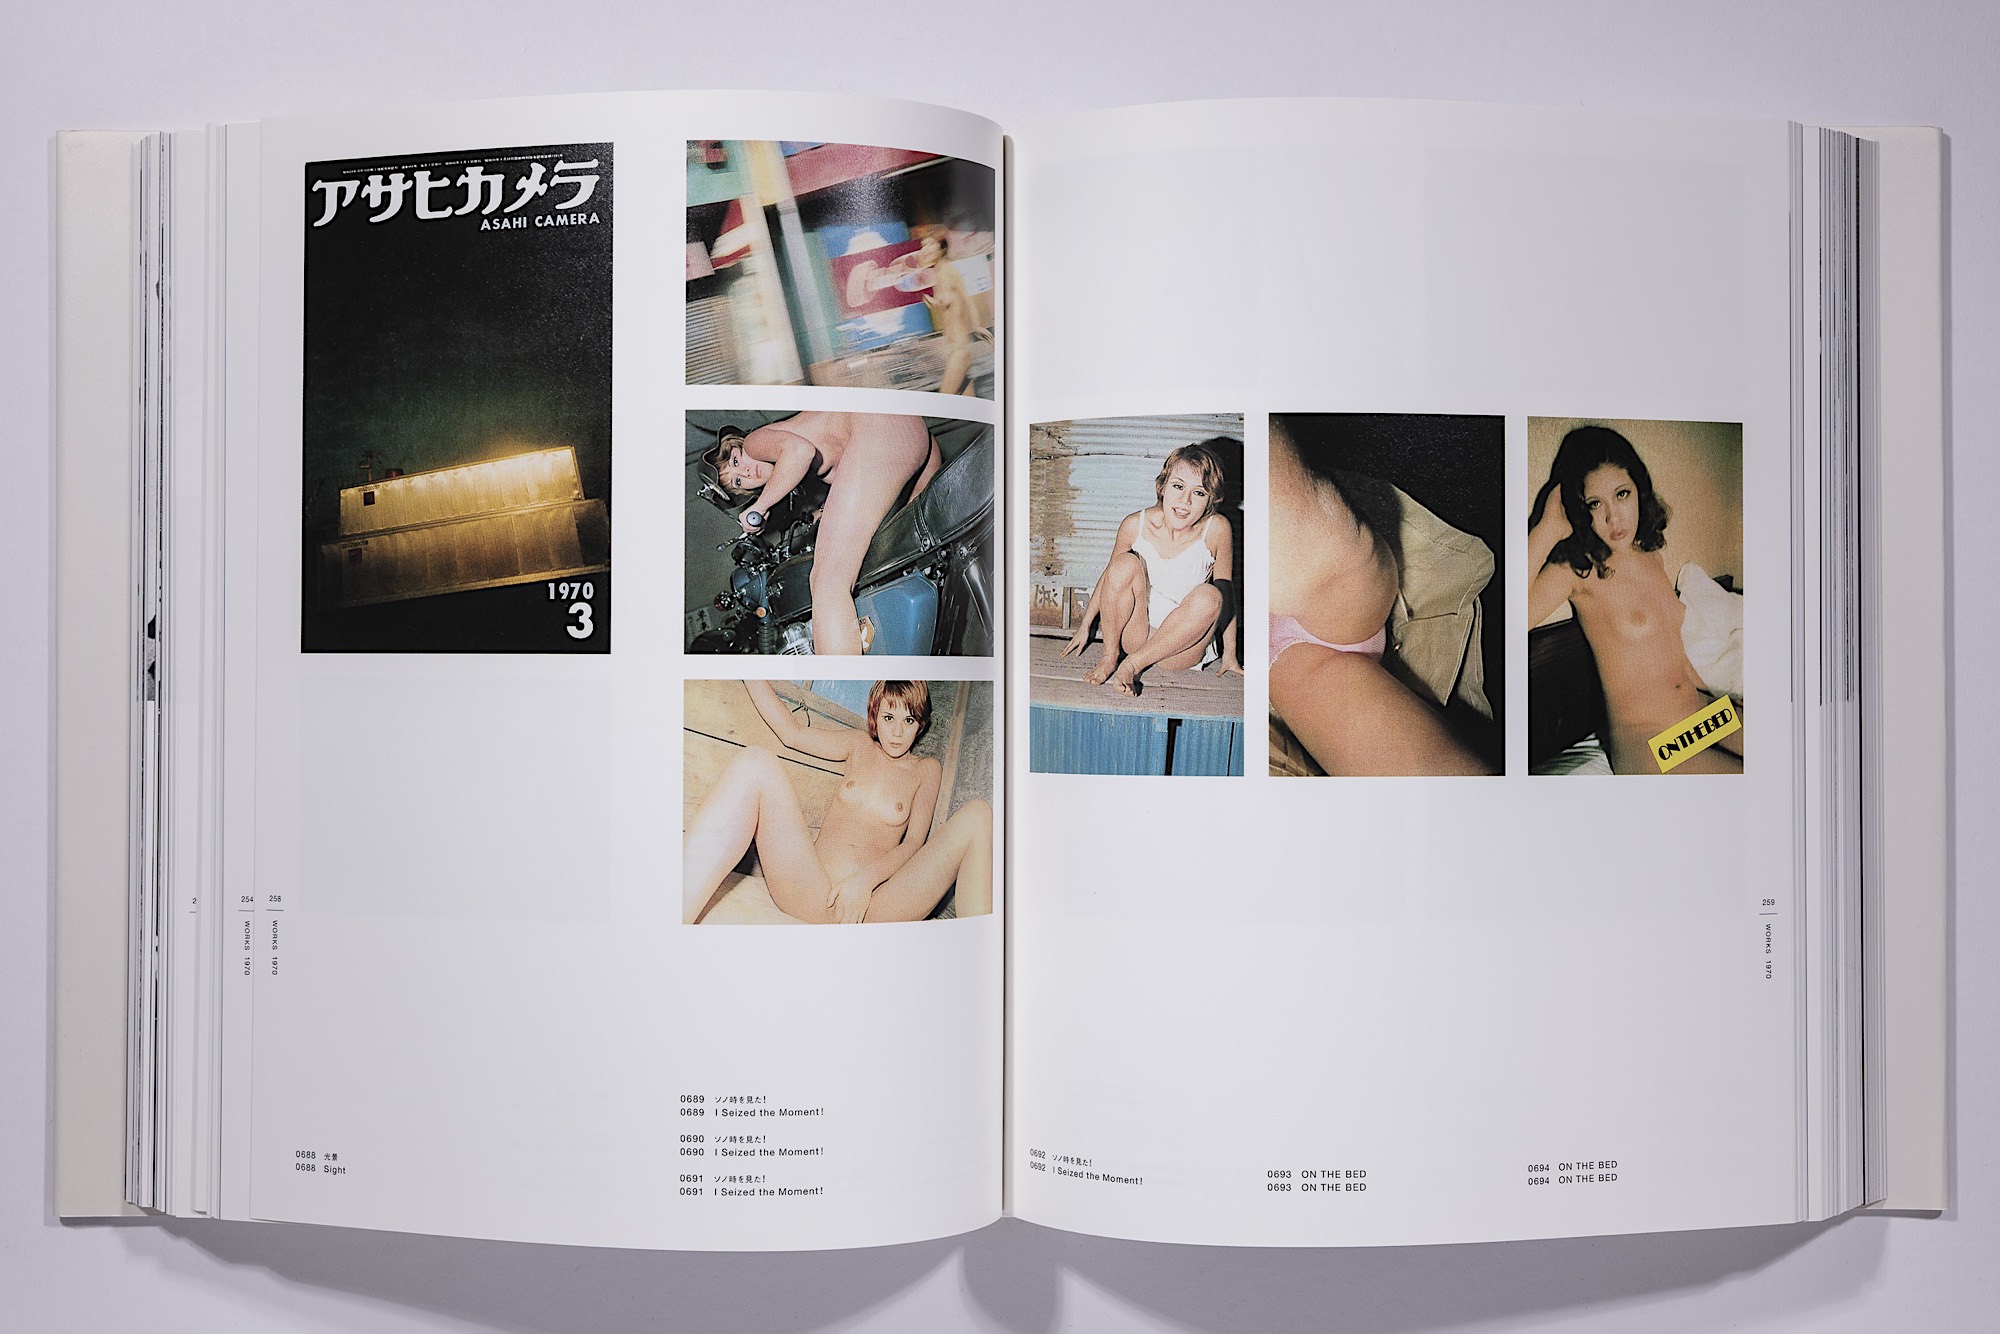 Daido Moriyama - The Complete Works of Daido Moriyama Image 64